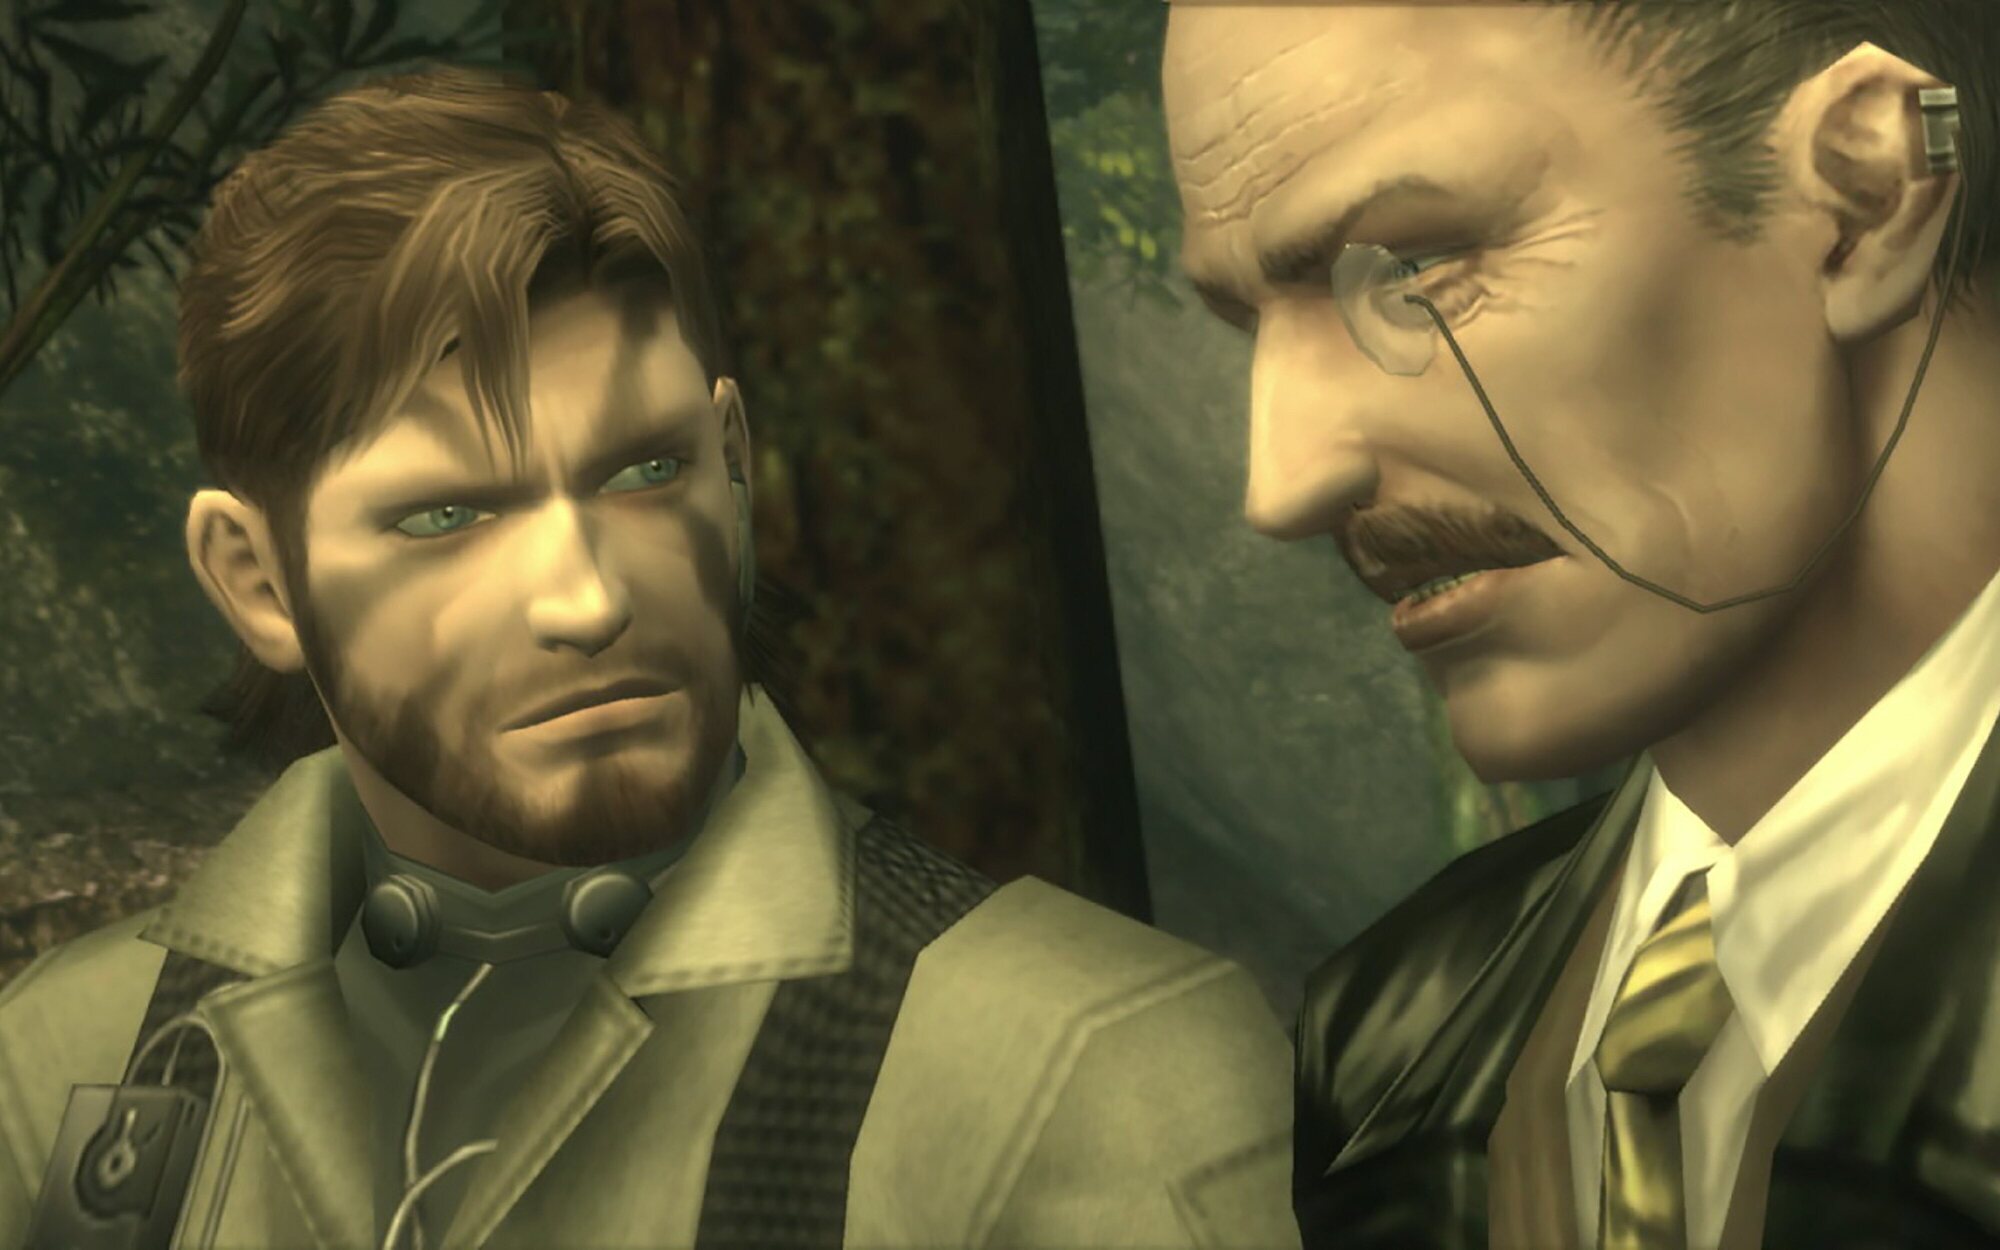 La exclusividad de 'Metal Gear Solid 3 Remake' en PS5 sería solo temporal